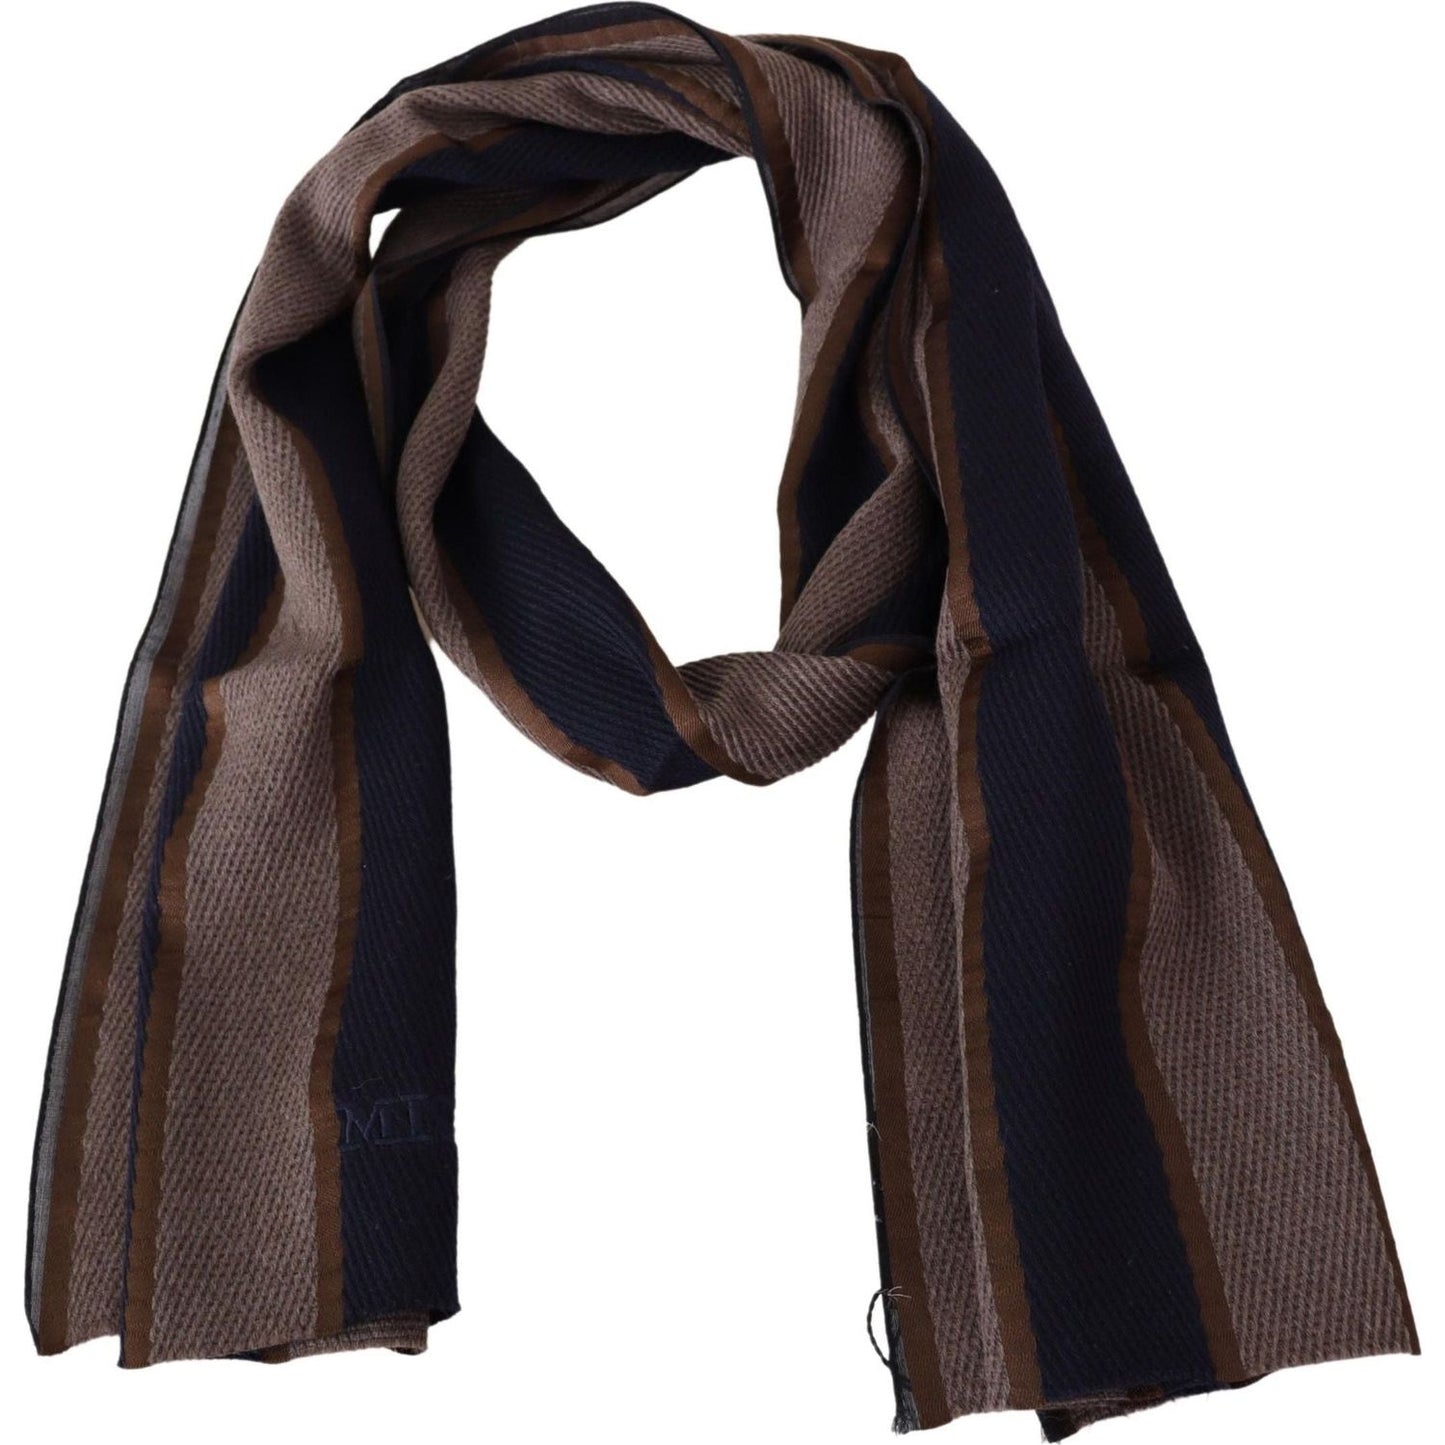 Missoni Elegant Striped Wool Scarf brown-wool-striped-unisex-neck-wrap-shawl-scarf